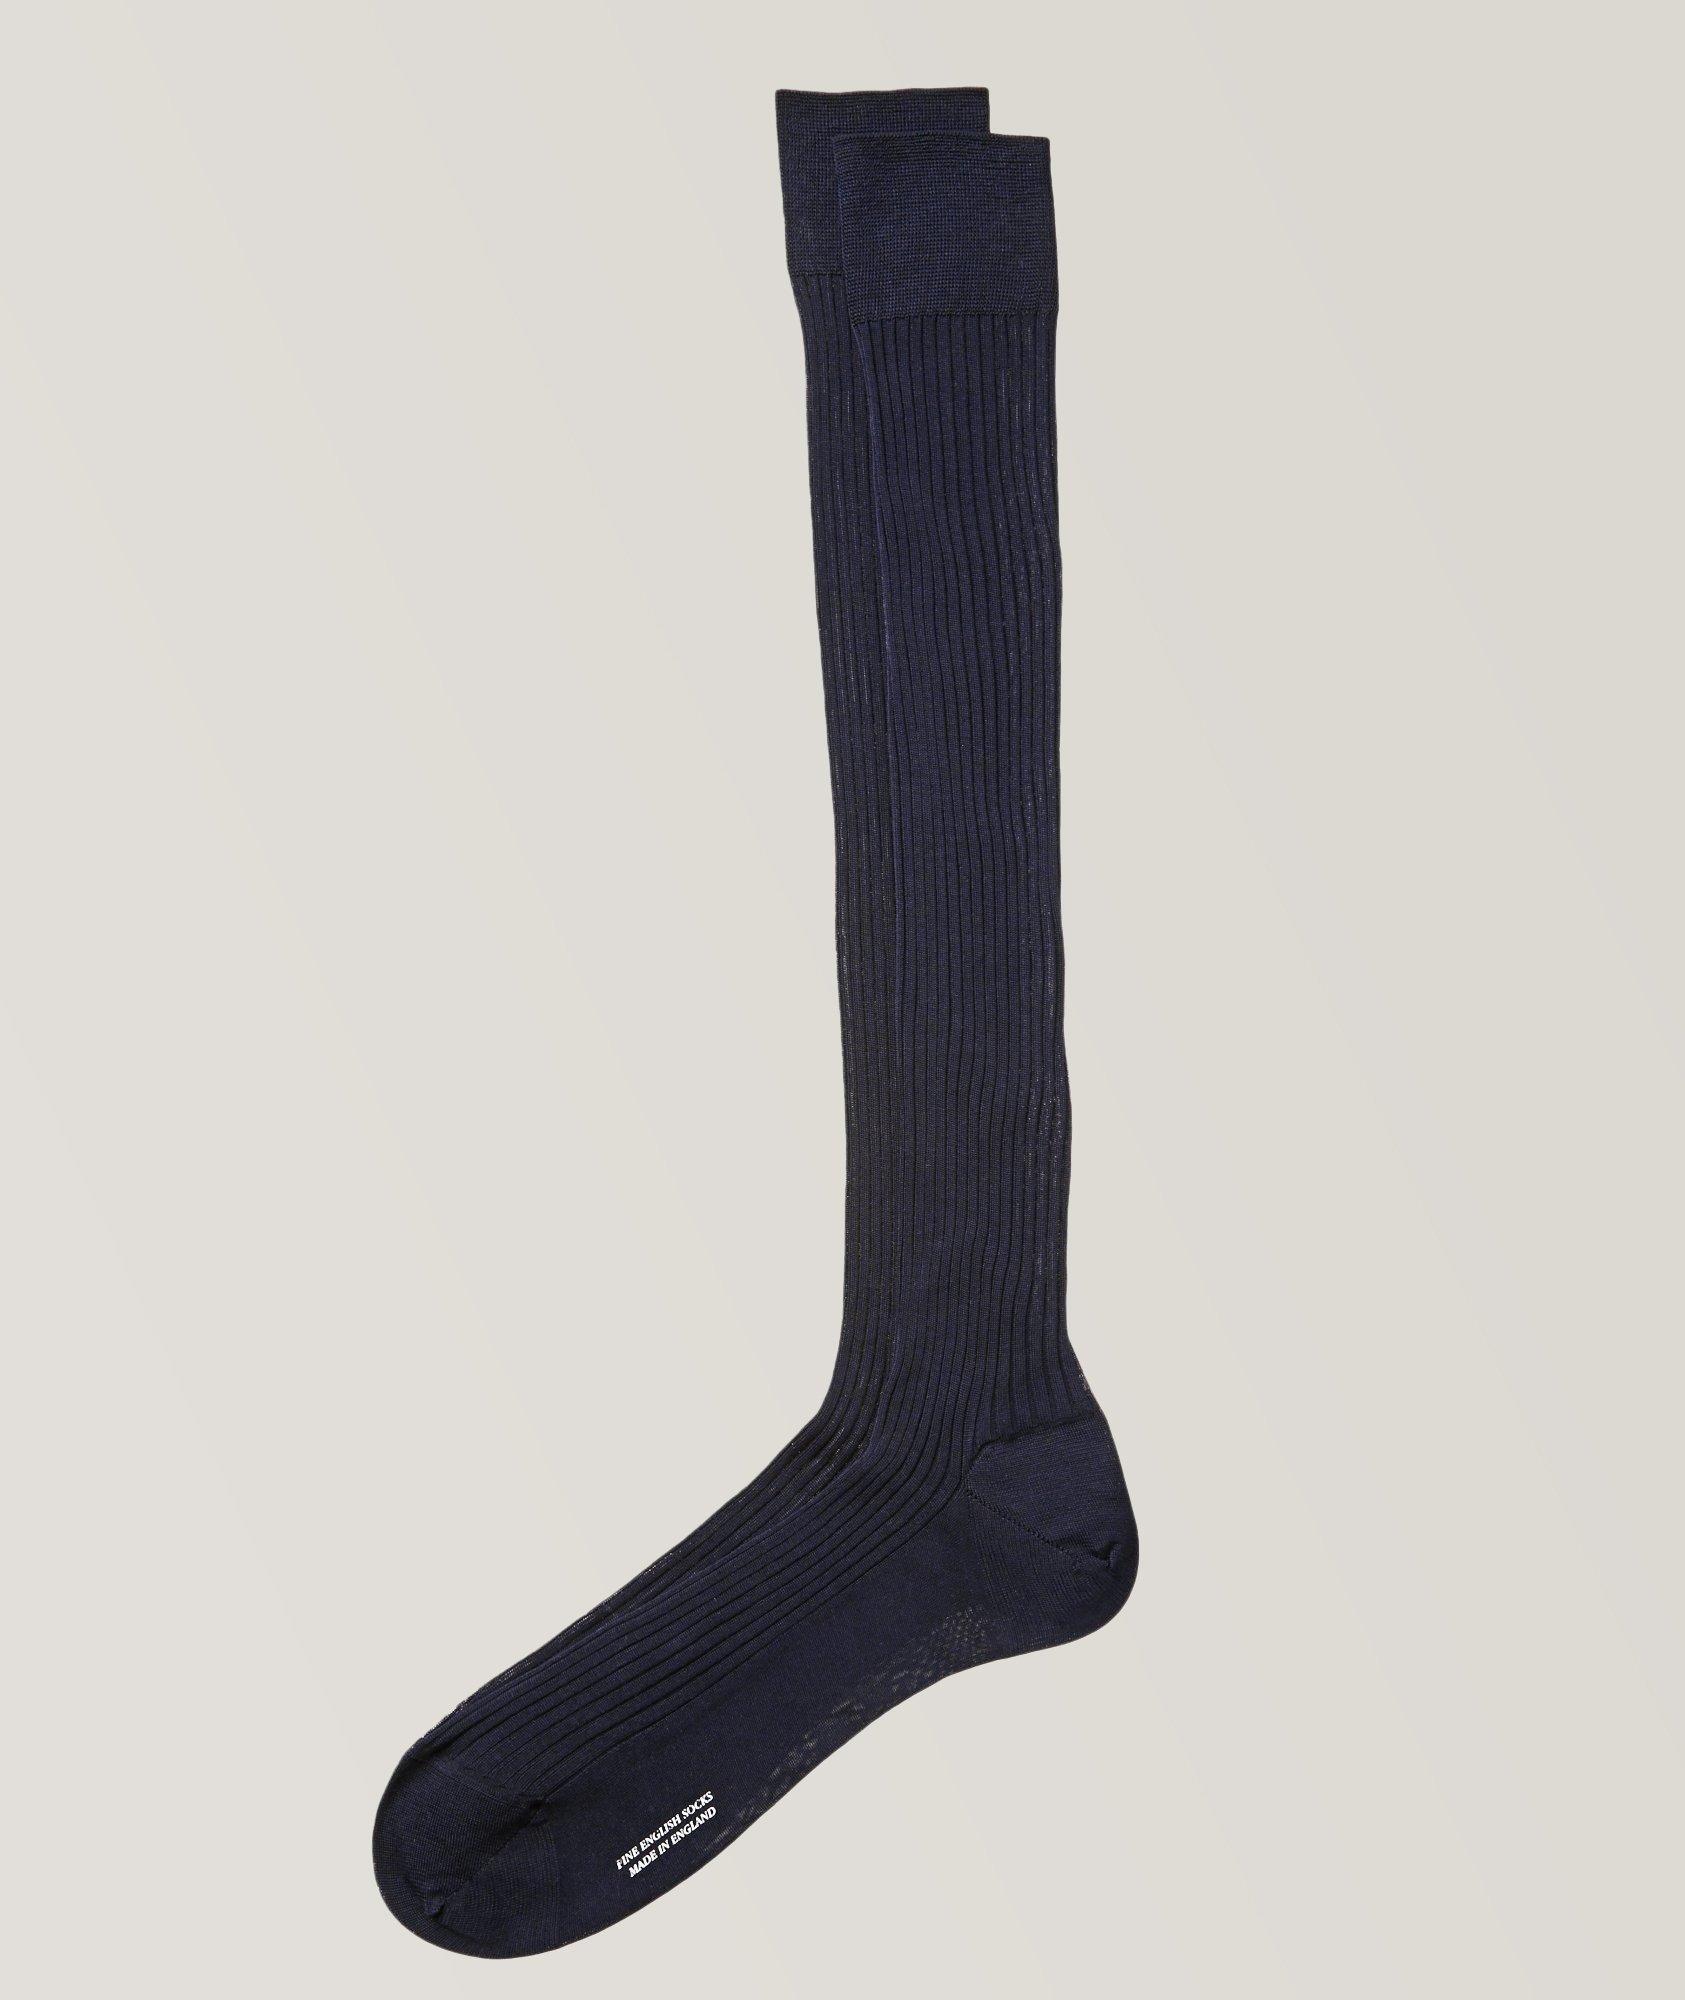 Harry Rosen Ribbed Dress Socks. 1